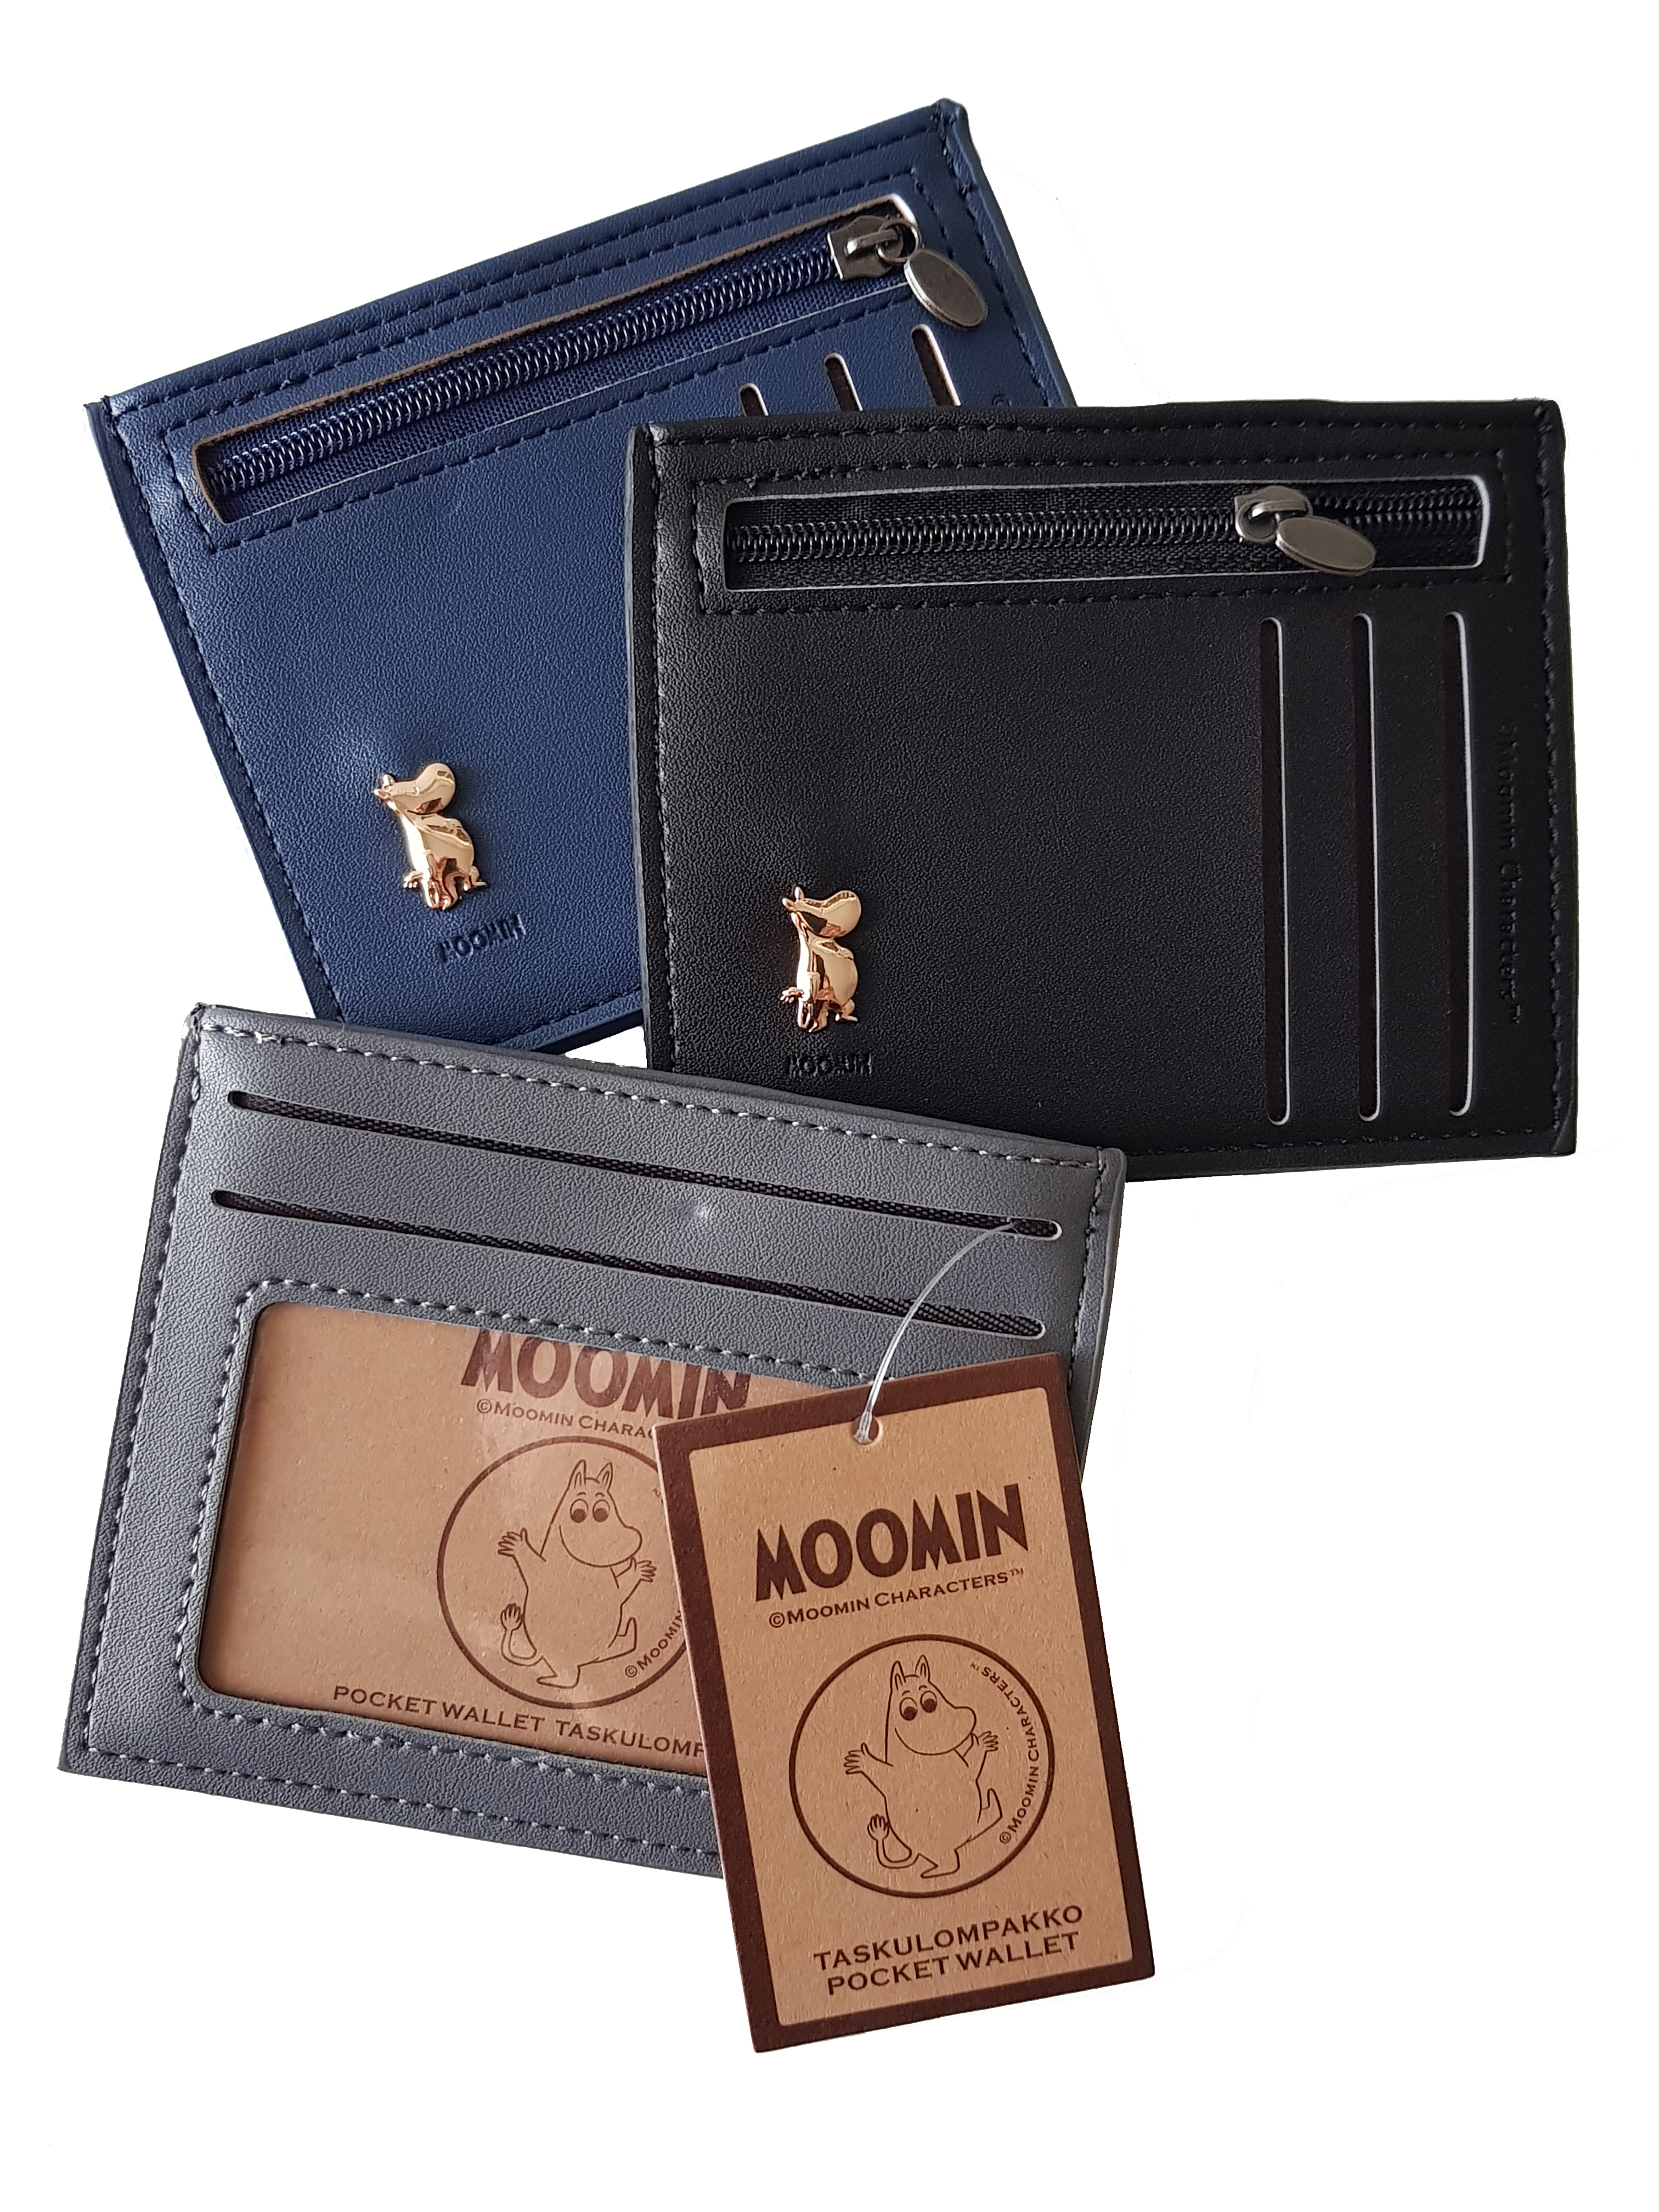 TMF Trade Moomin Pocket Wallet